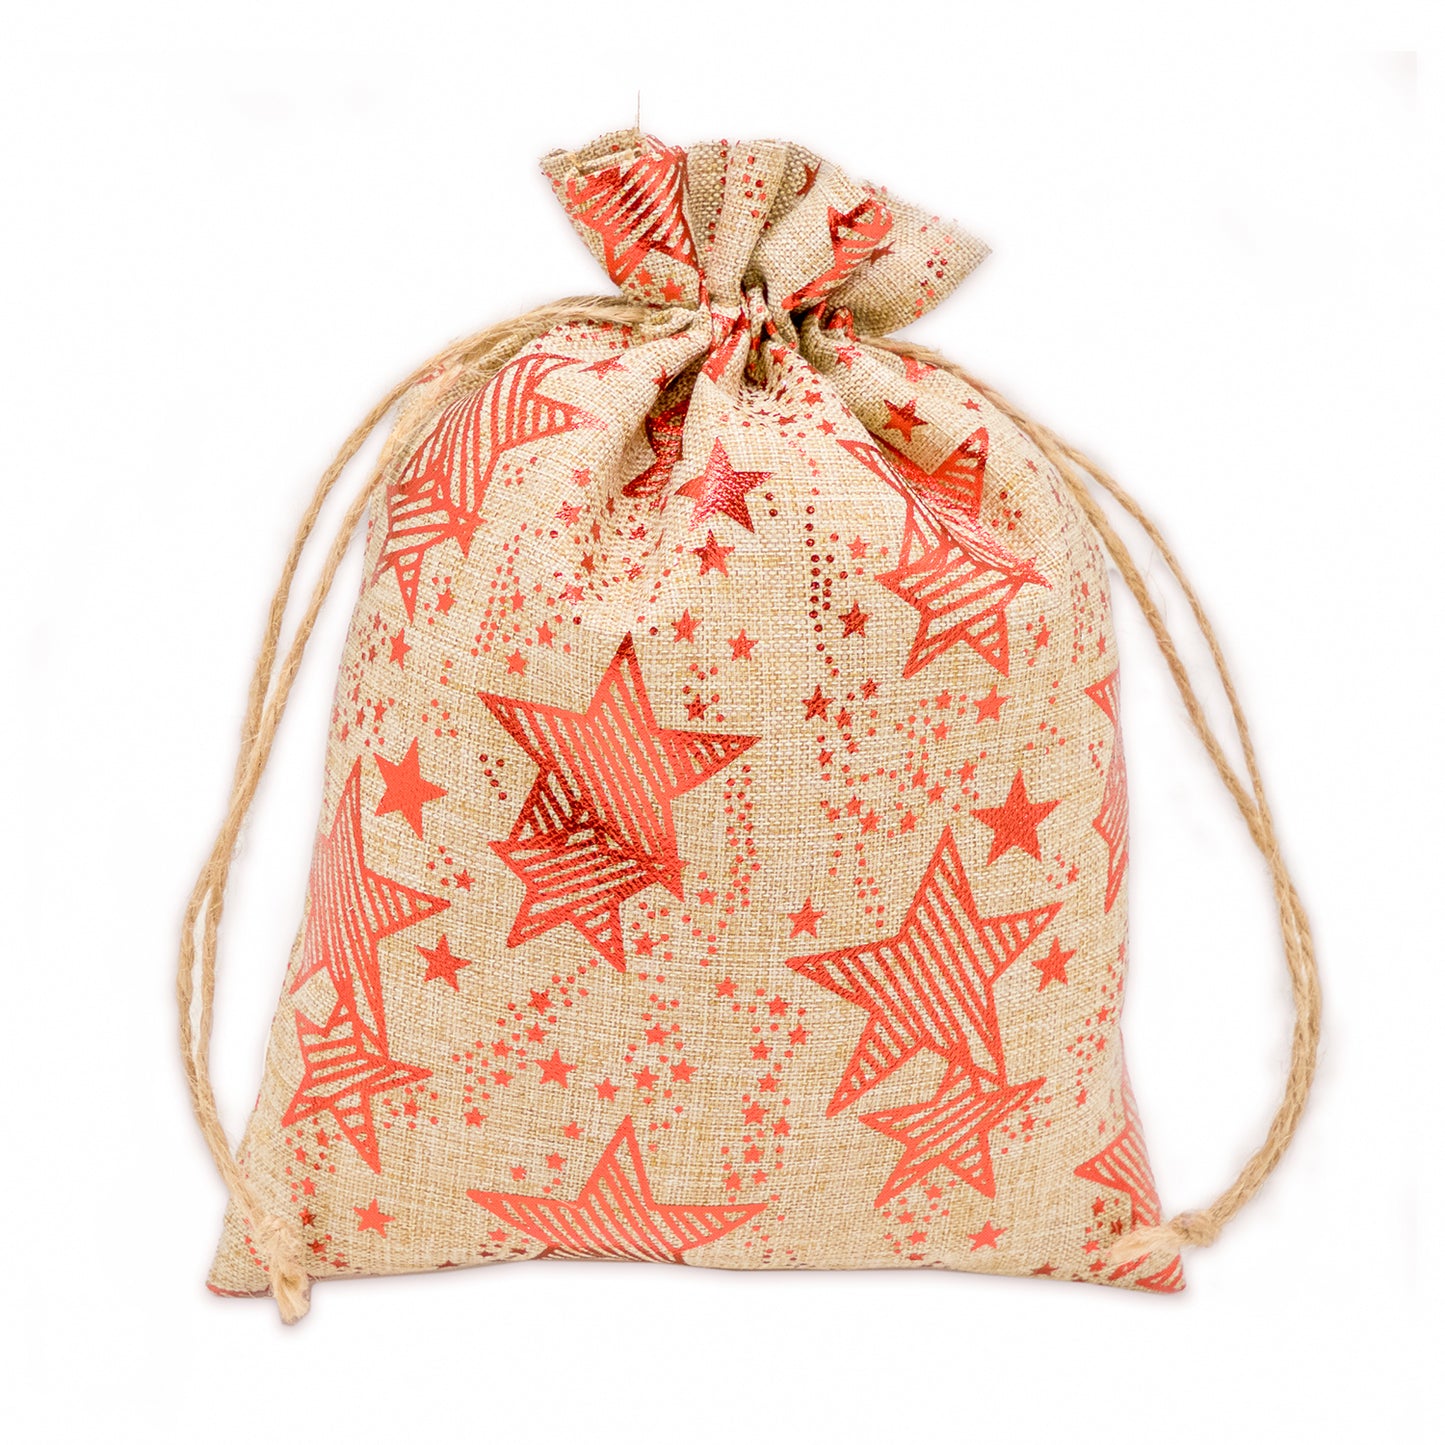 8" x 10" Jute Burlap Red Star Drawstring Gift Bags